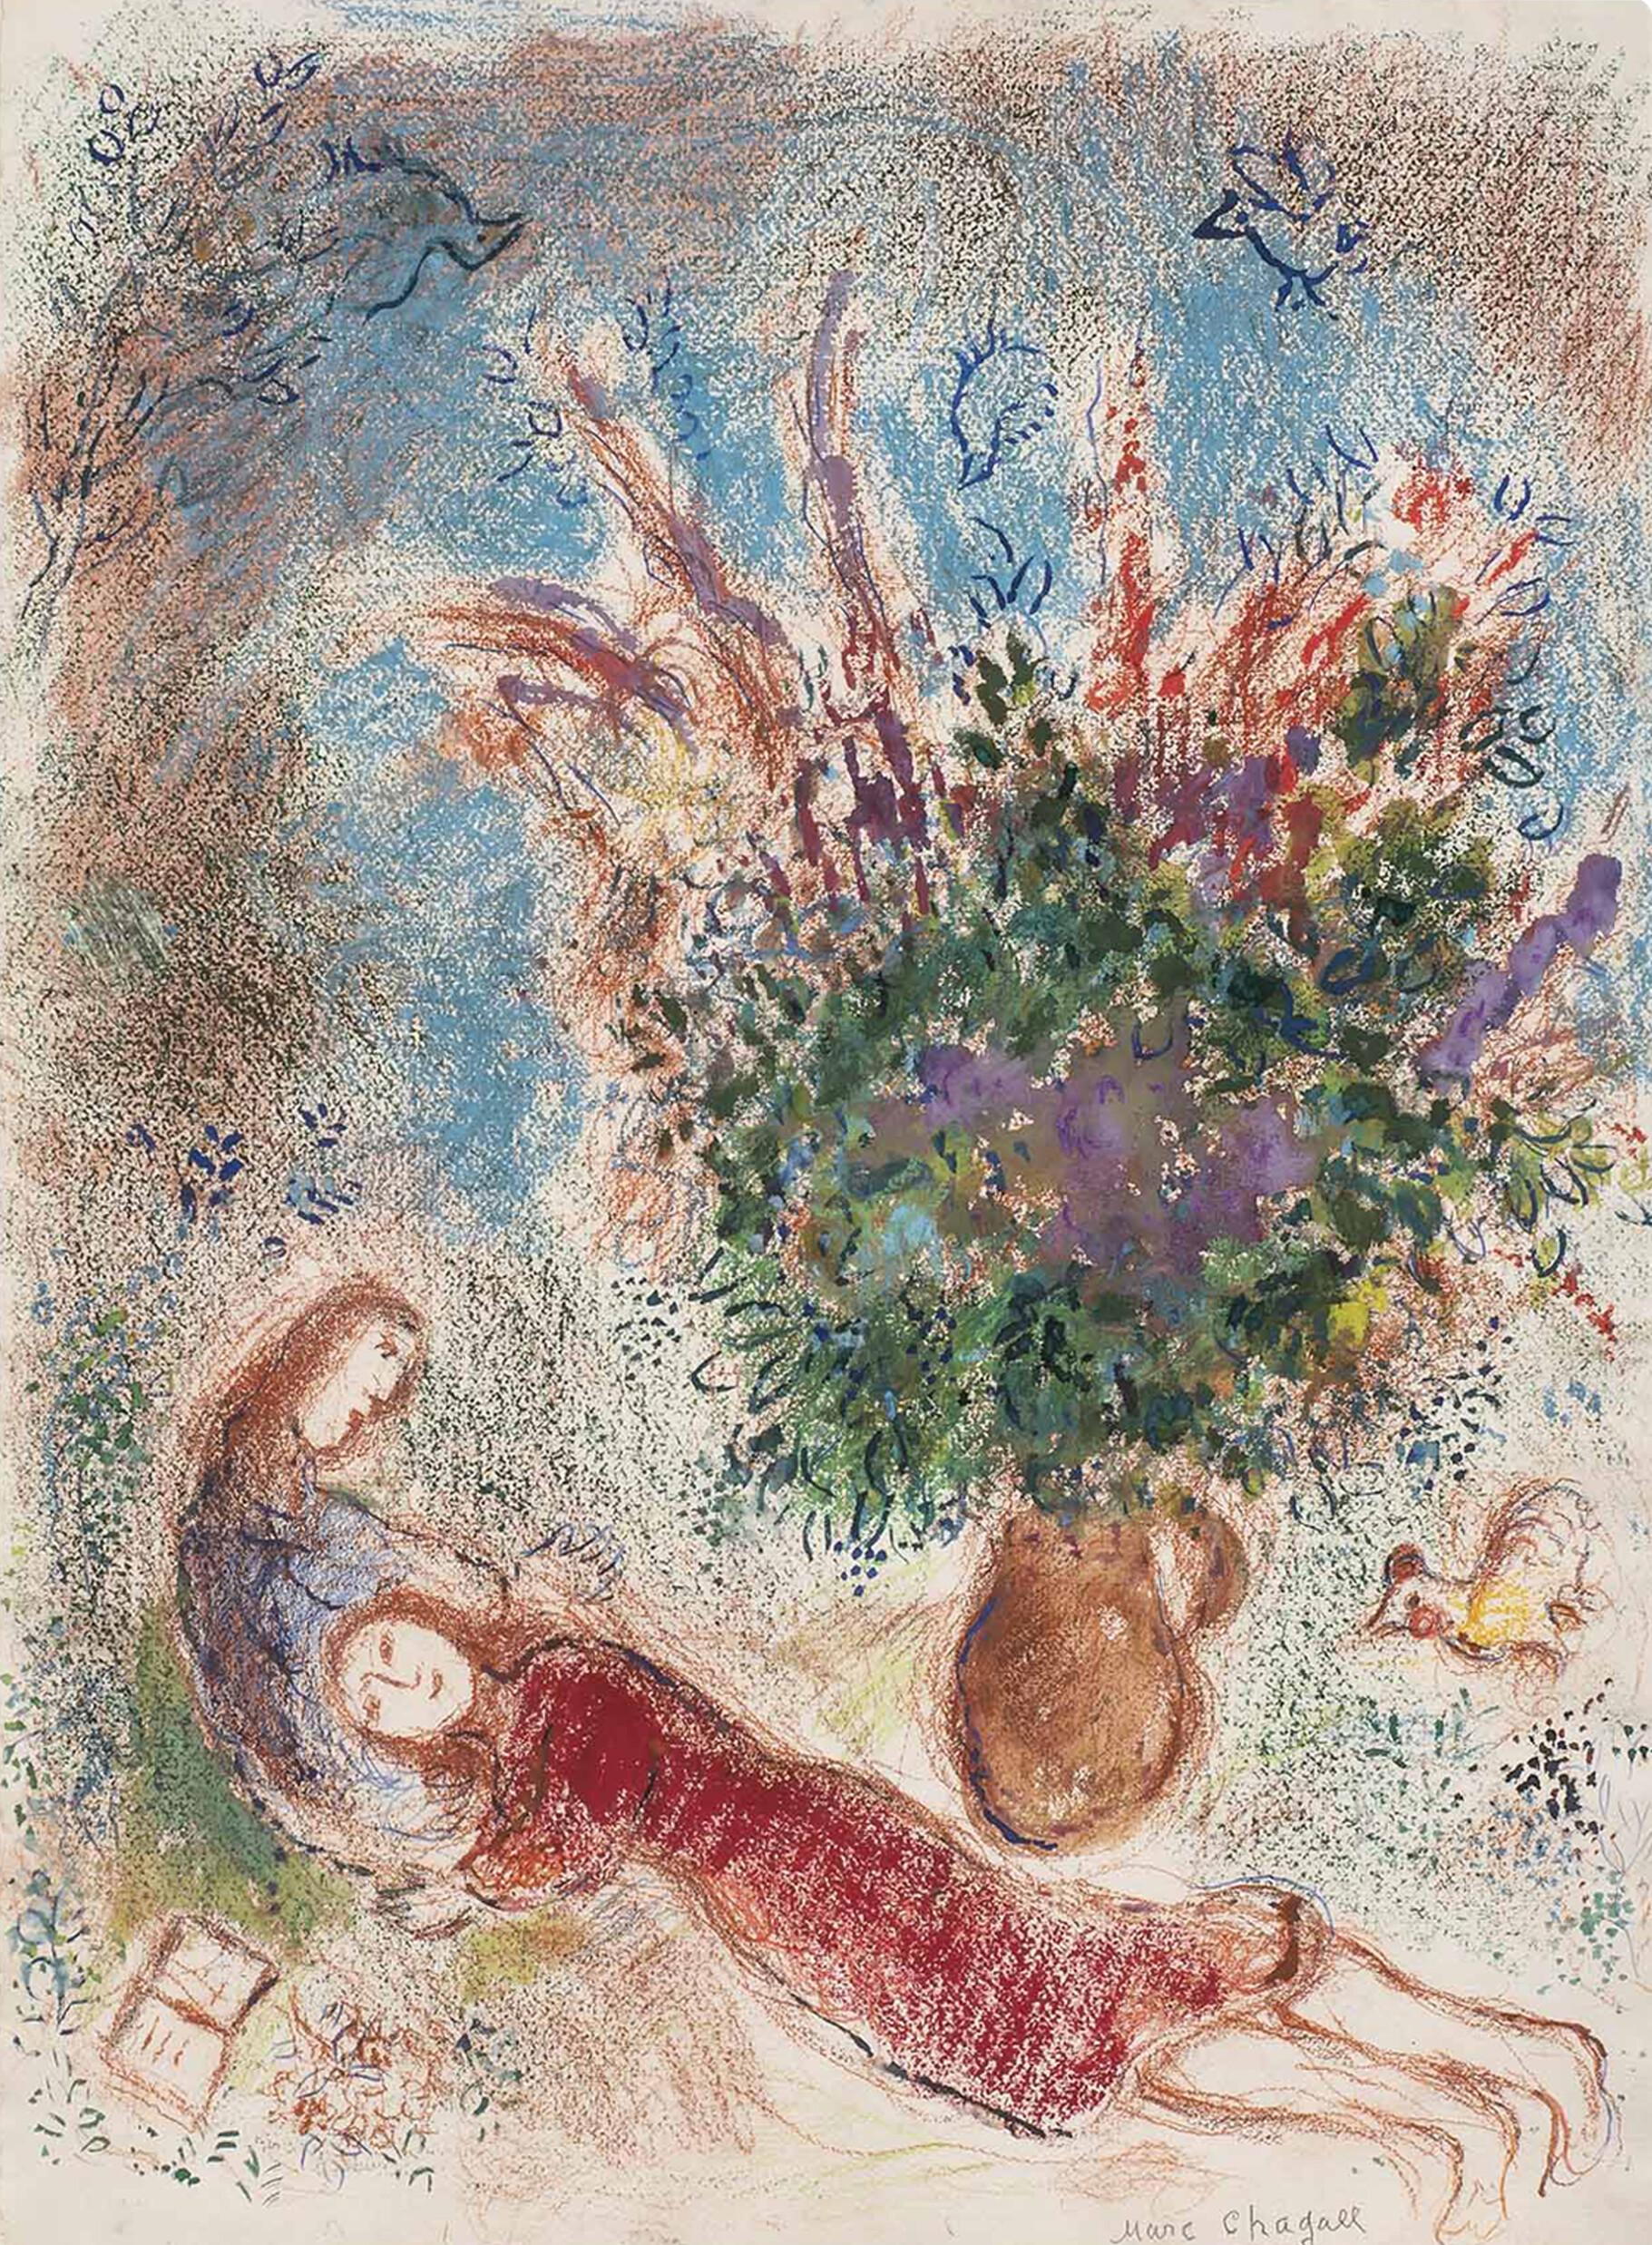 【通販豊富な】Marc Chagall、LA FETE DES TABERNACLES-LE REPAS EN PLEIN AIR、希少な画集より、状態良好、送料込み、meg 自然、風景画